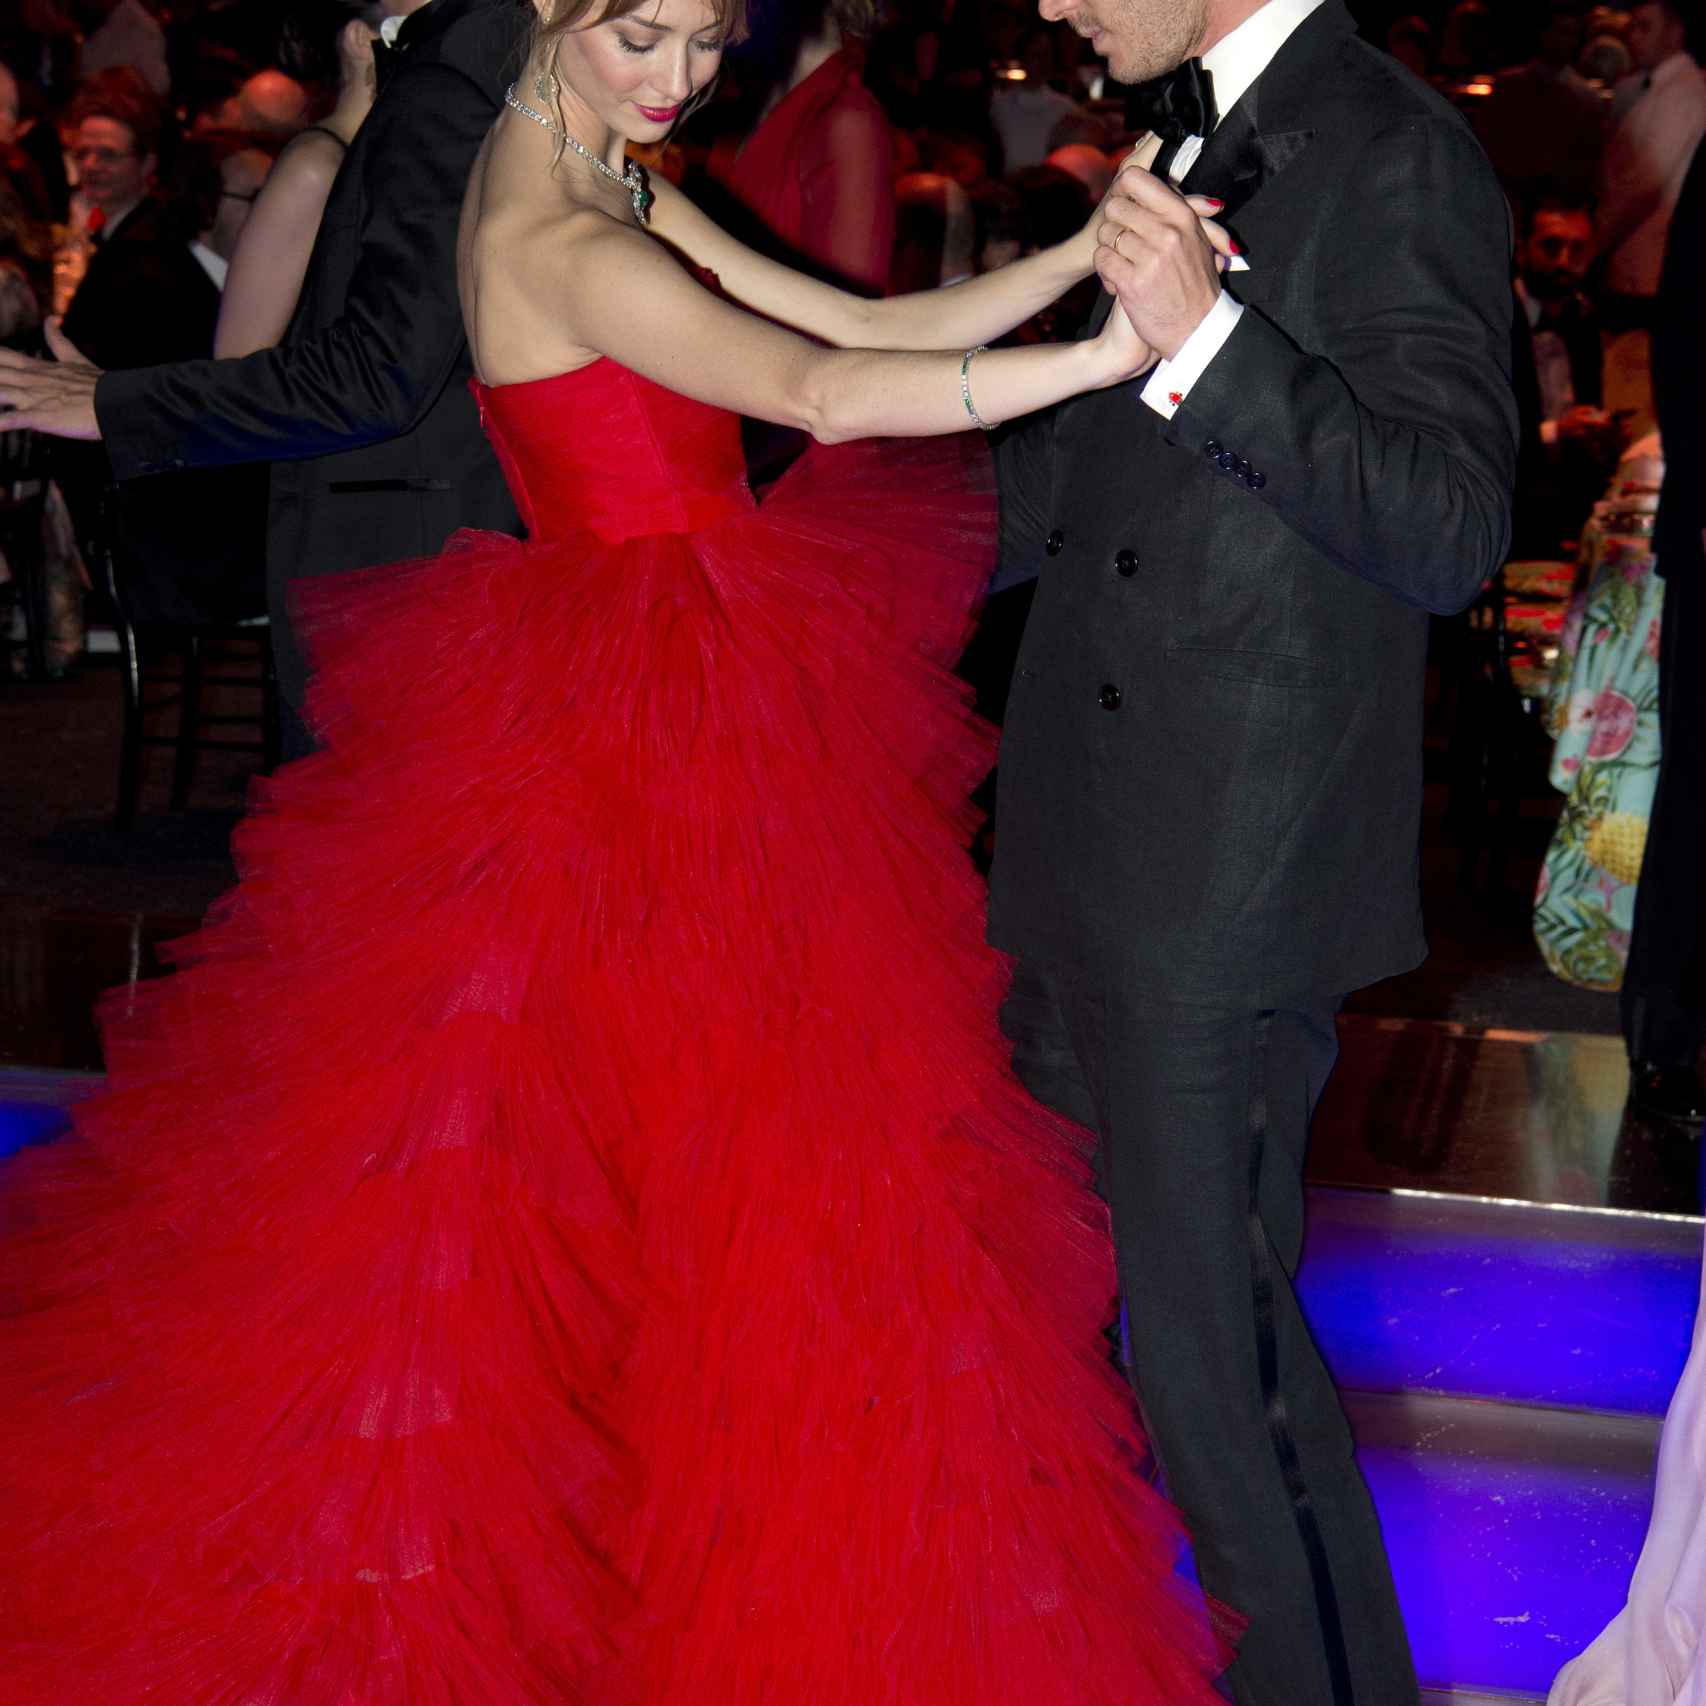 La pareja, durante el baile de la Rosa de este año en Mónaco.